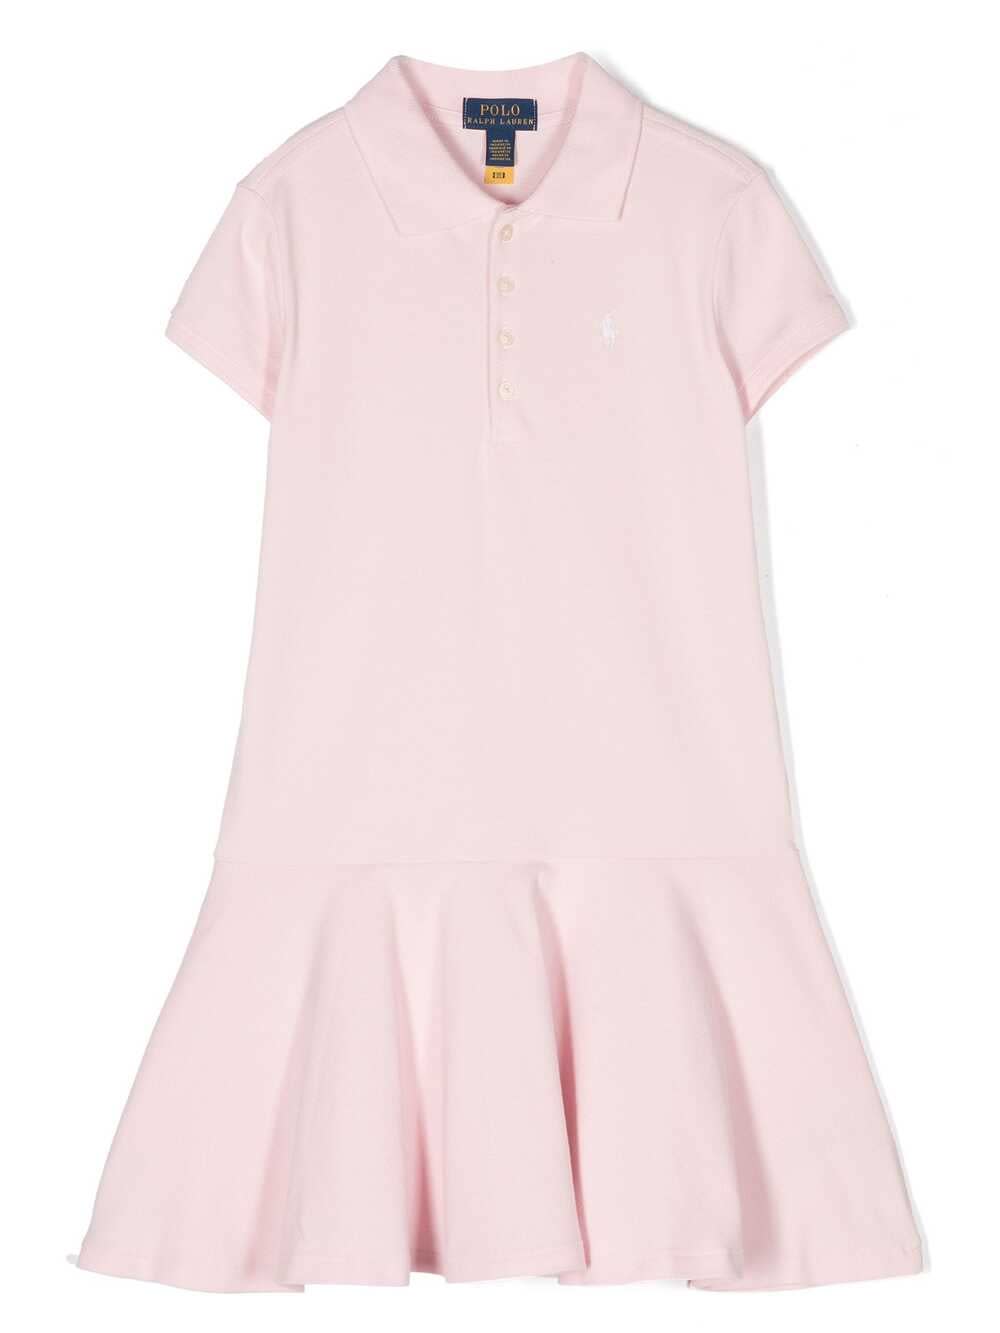 Shop Ralph Lauren Pink Polo Style Dress